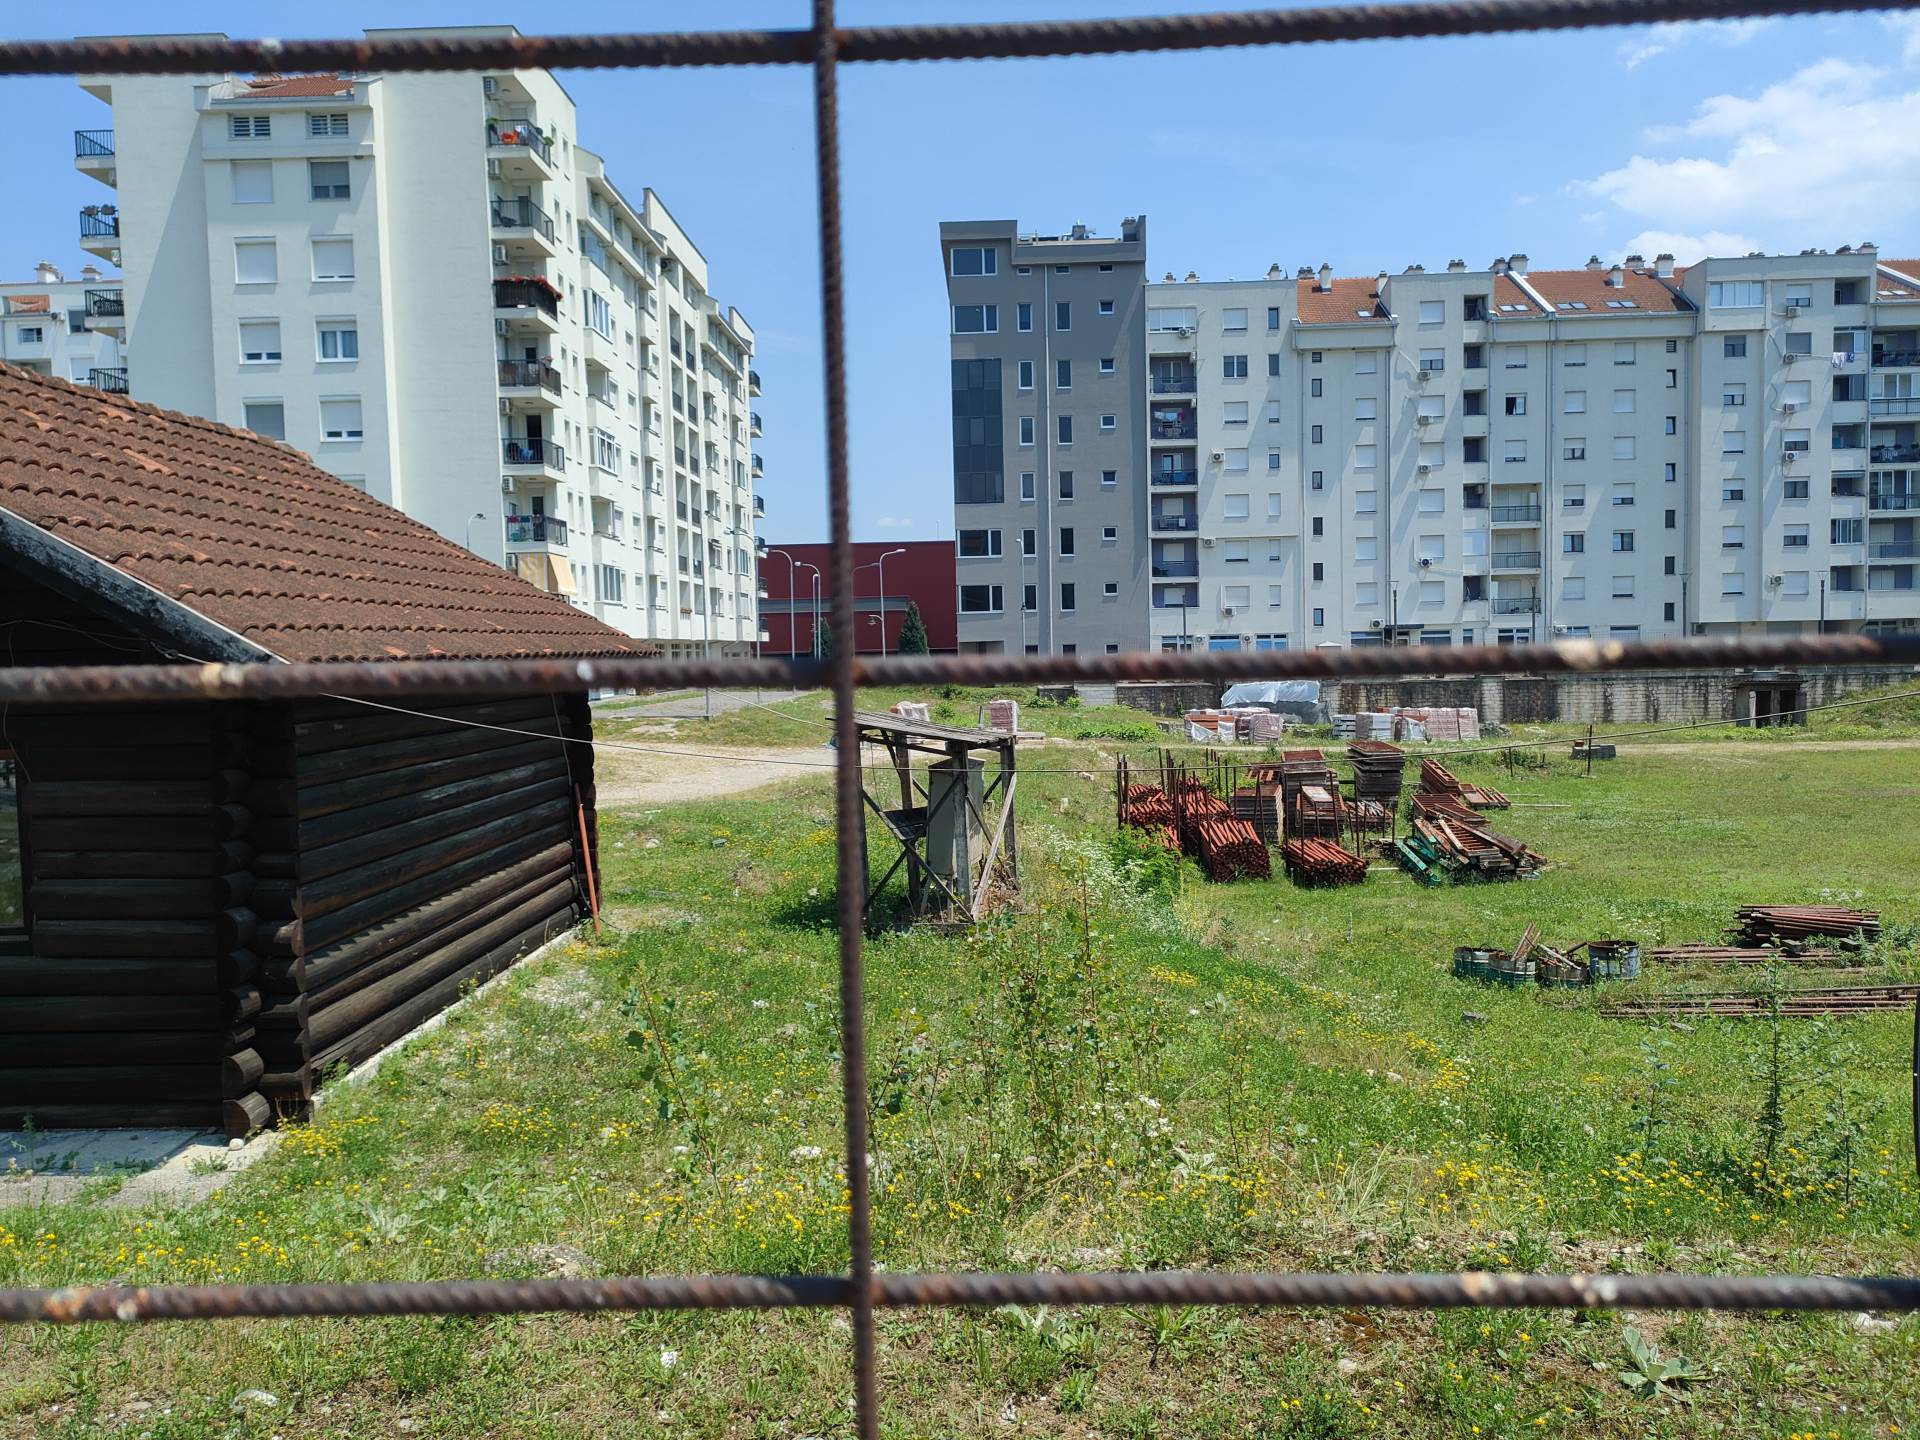  Naselje Aleja-Centar: Mjesto gdje će se graditi zgrada umjesto škole 